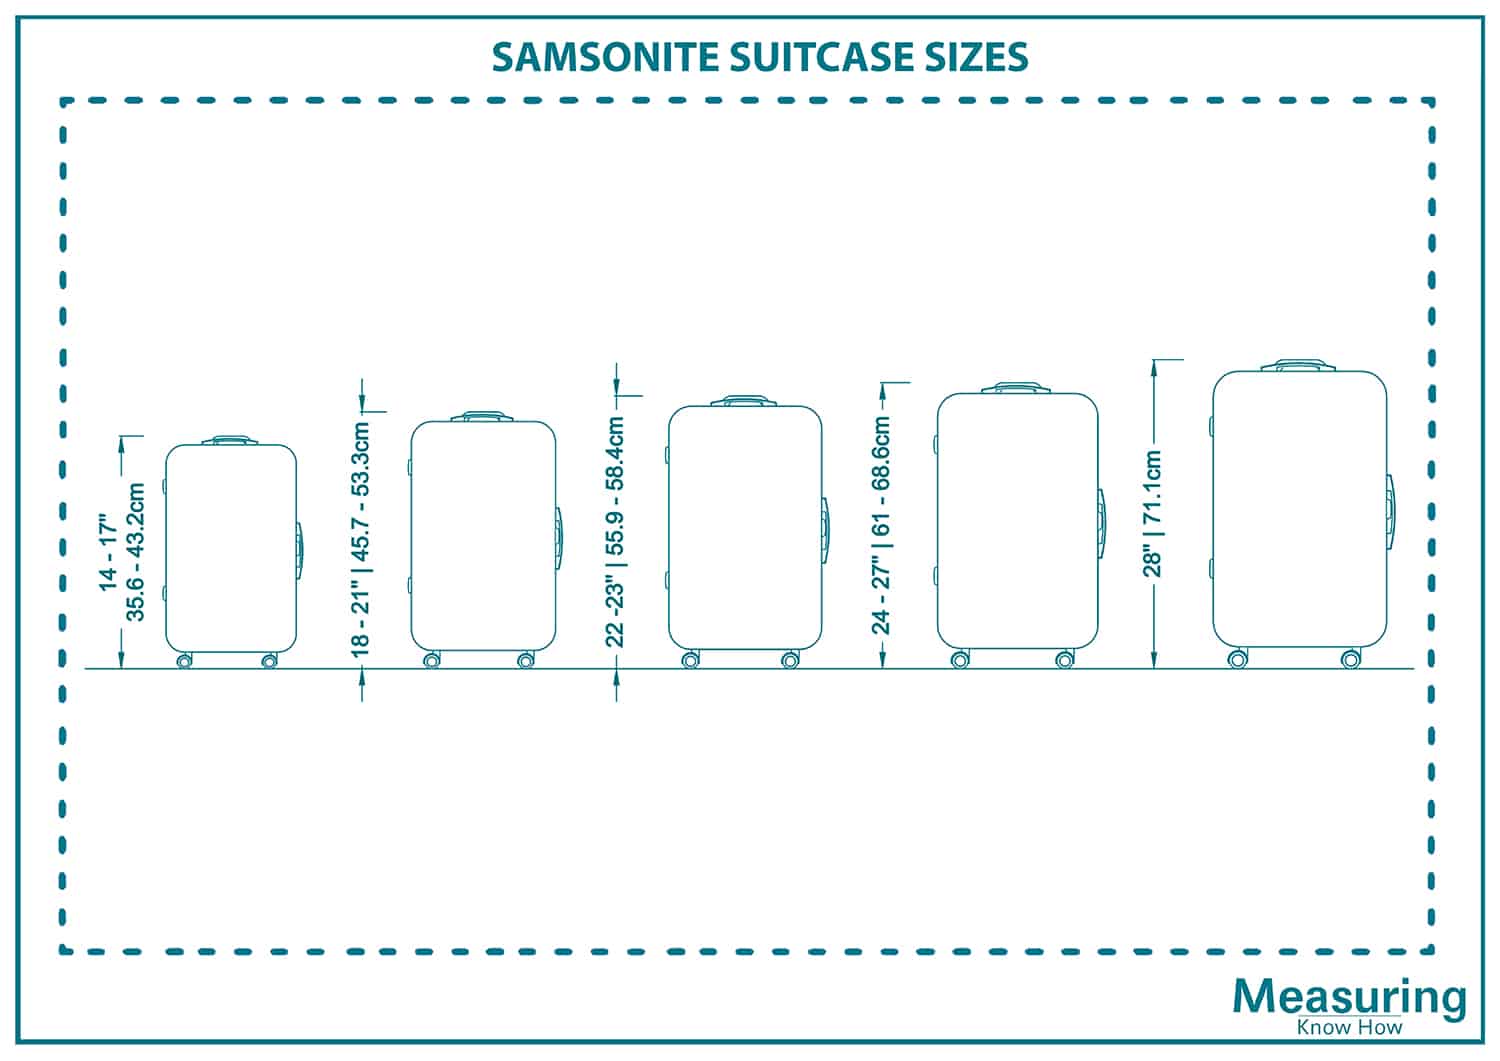 Samsonite suitcase sizes